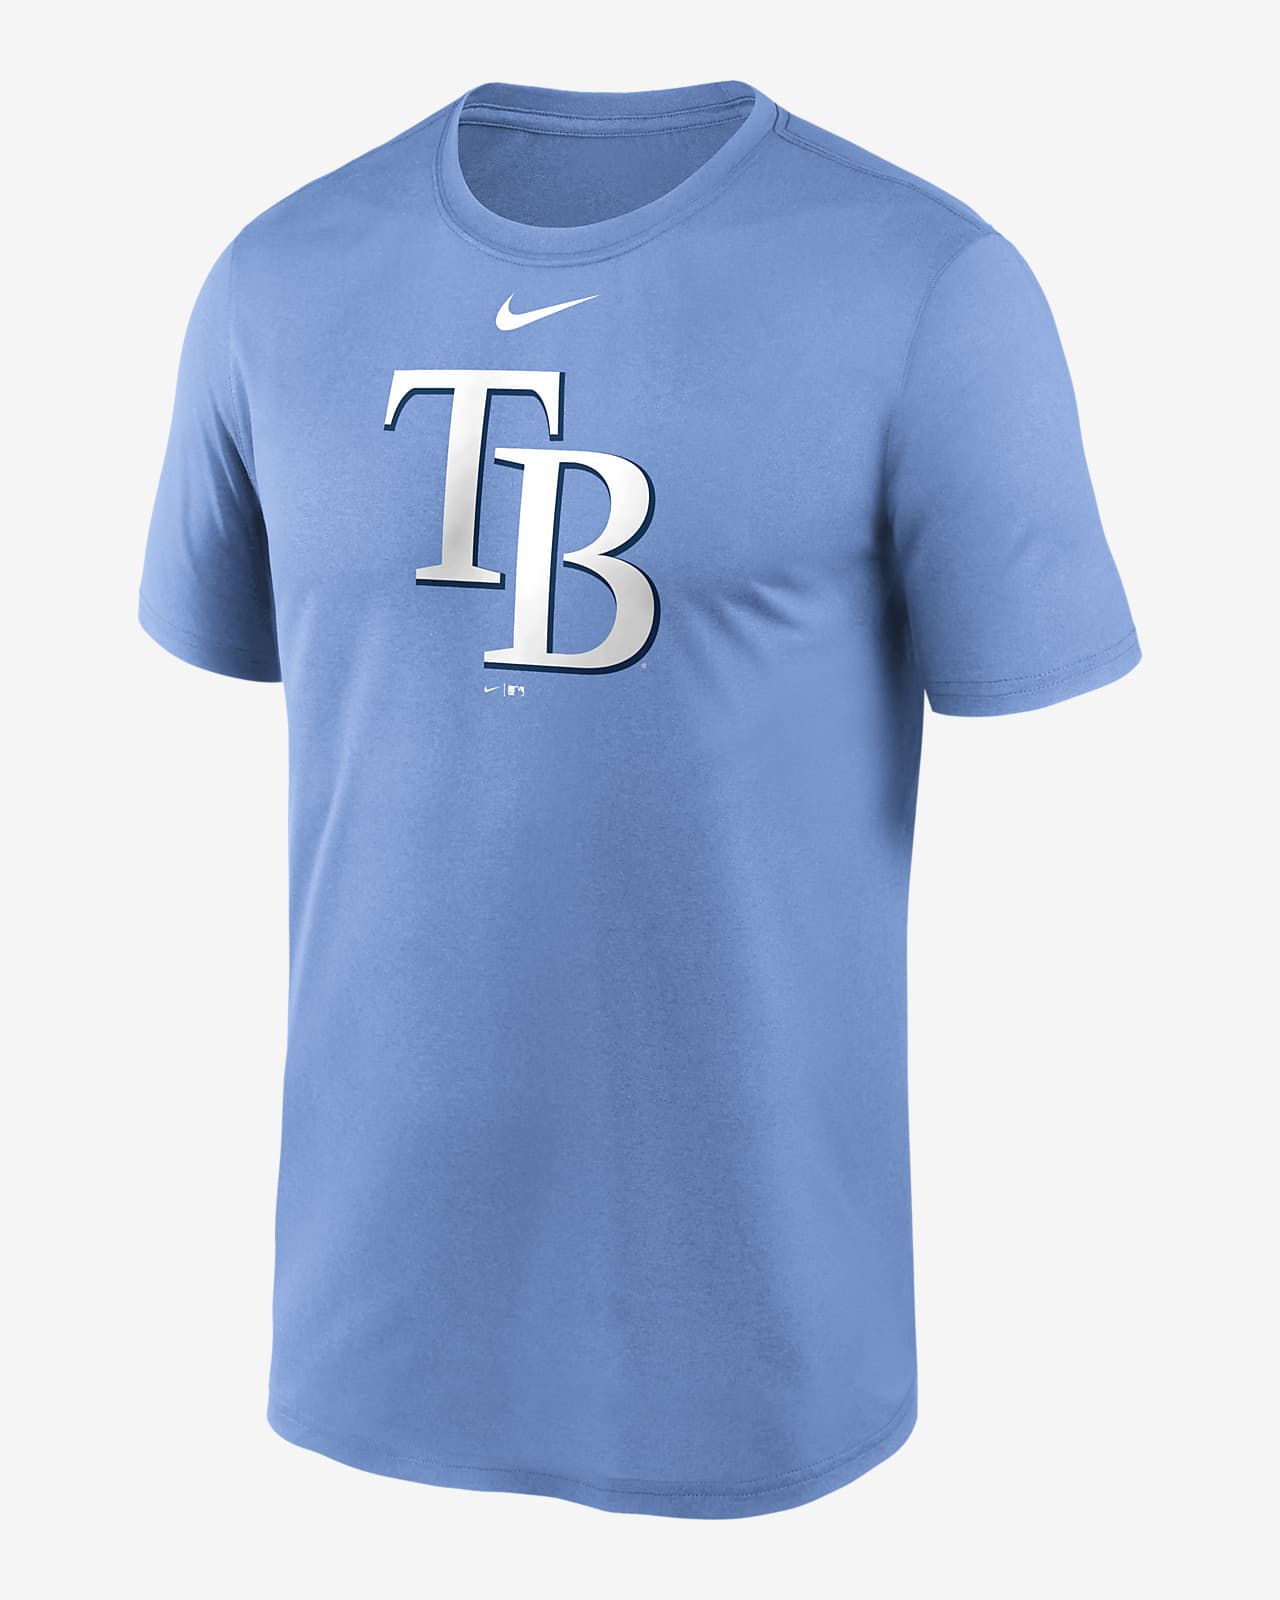 Nike Dri-FIT Men's Baseball T-Shirt.